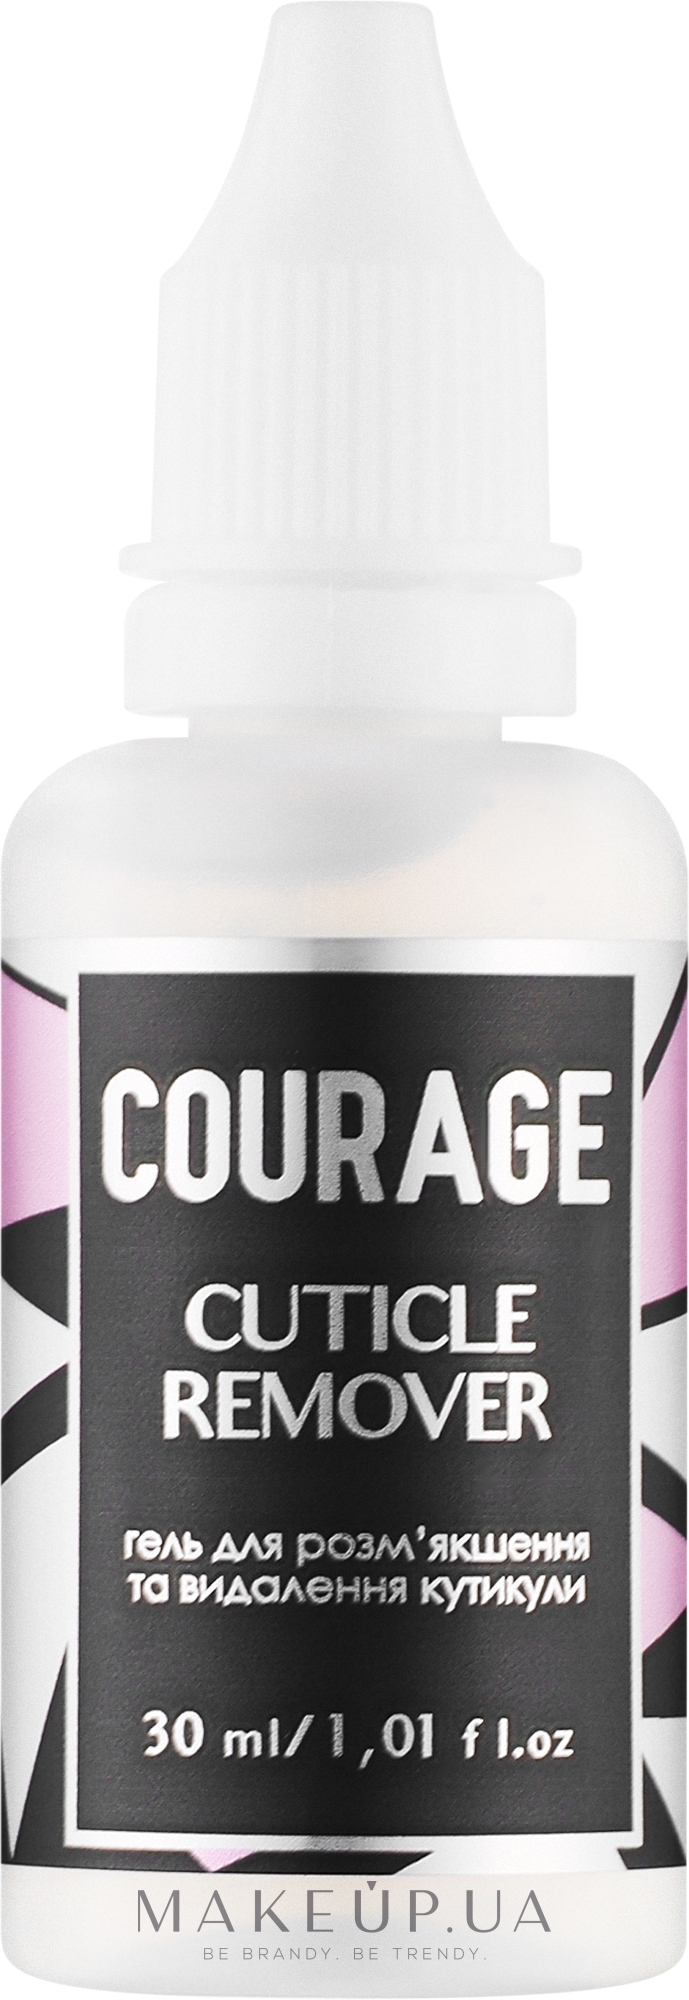 Засіб для видалення кутикули - Courage Cuticle Remover — фото 30ml